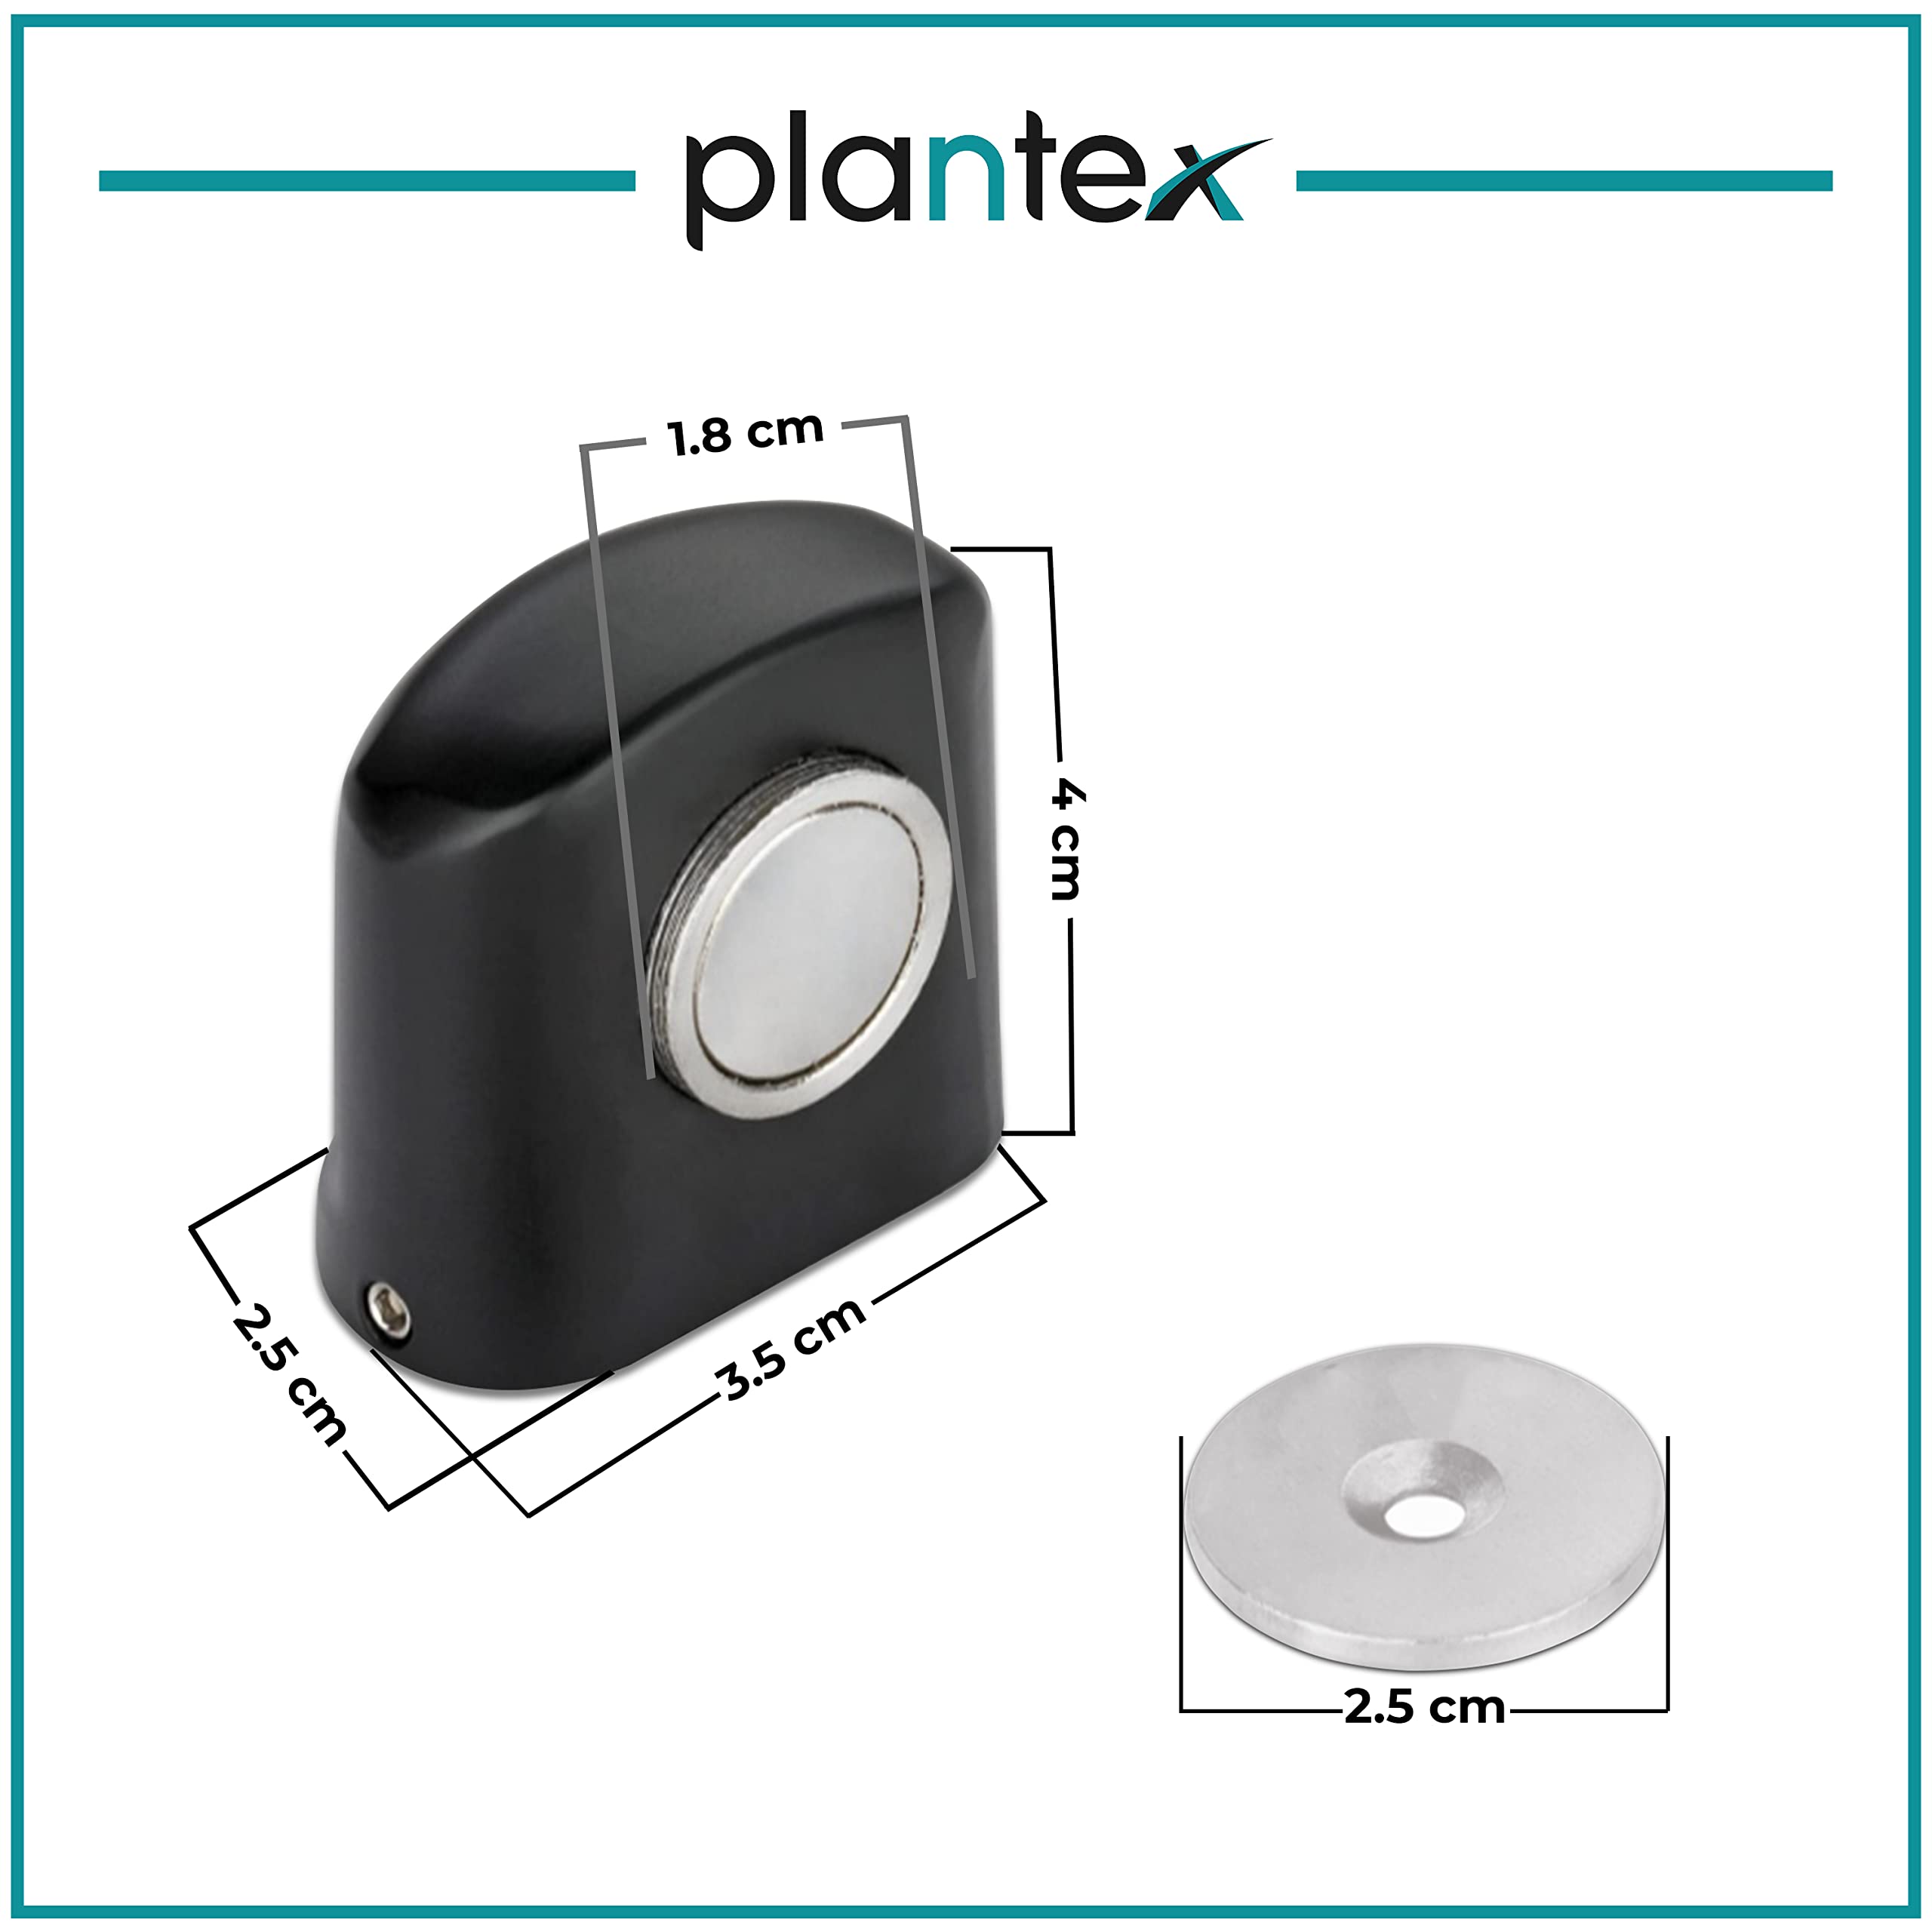 Plantex Heavy Duty Door Magnet Stopper/Door Catch Holder for Home/ Office/ Hotel, Floor Mounted Soft-Catcher to Hold Wooden/ Glass/ PVC Door (193,Black)